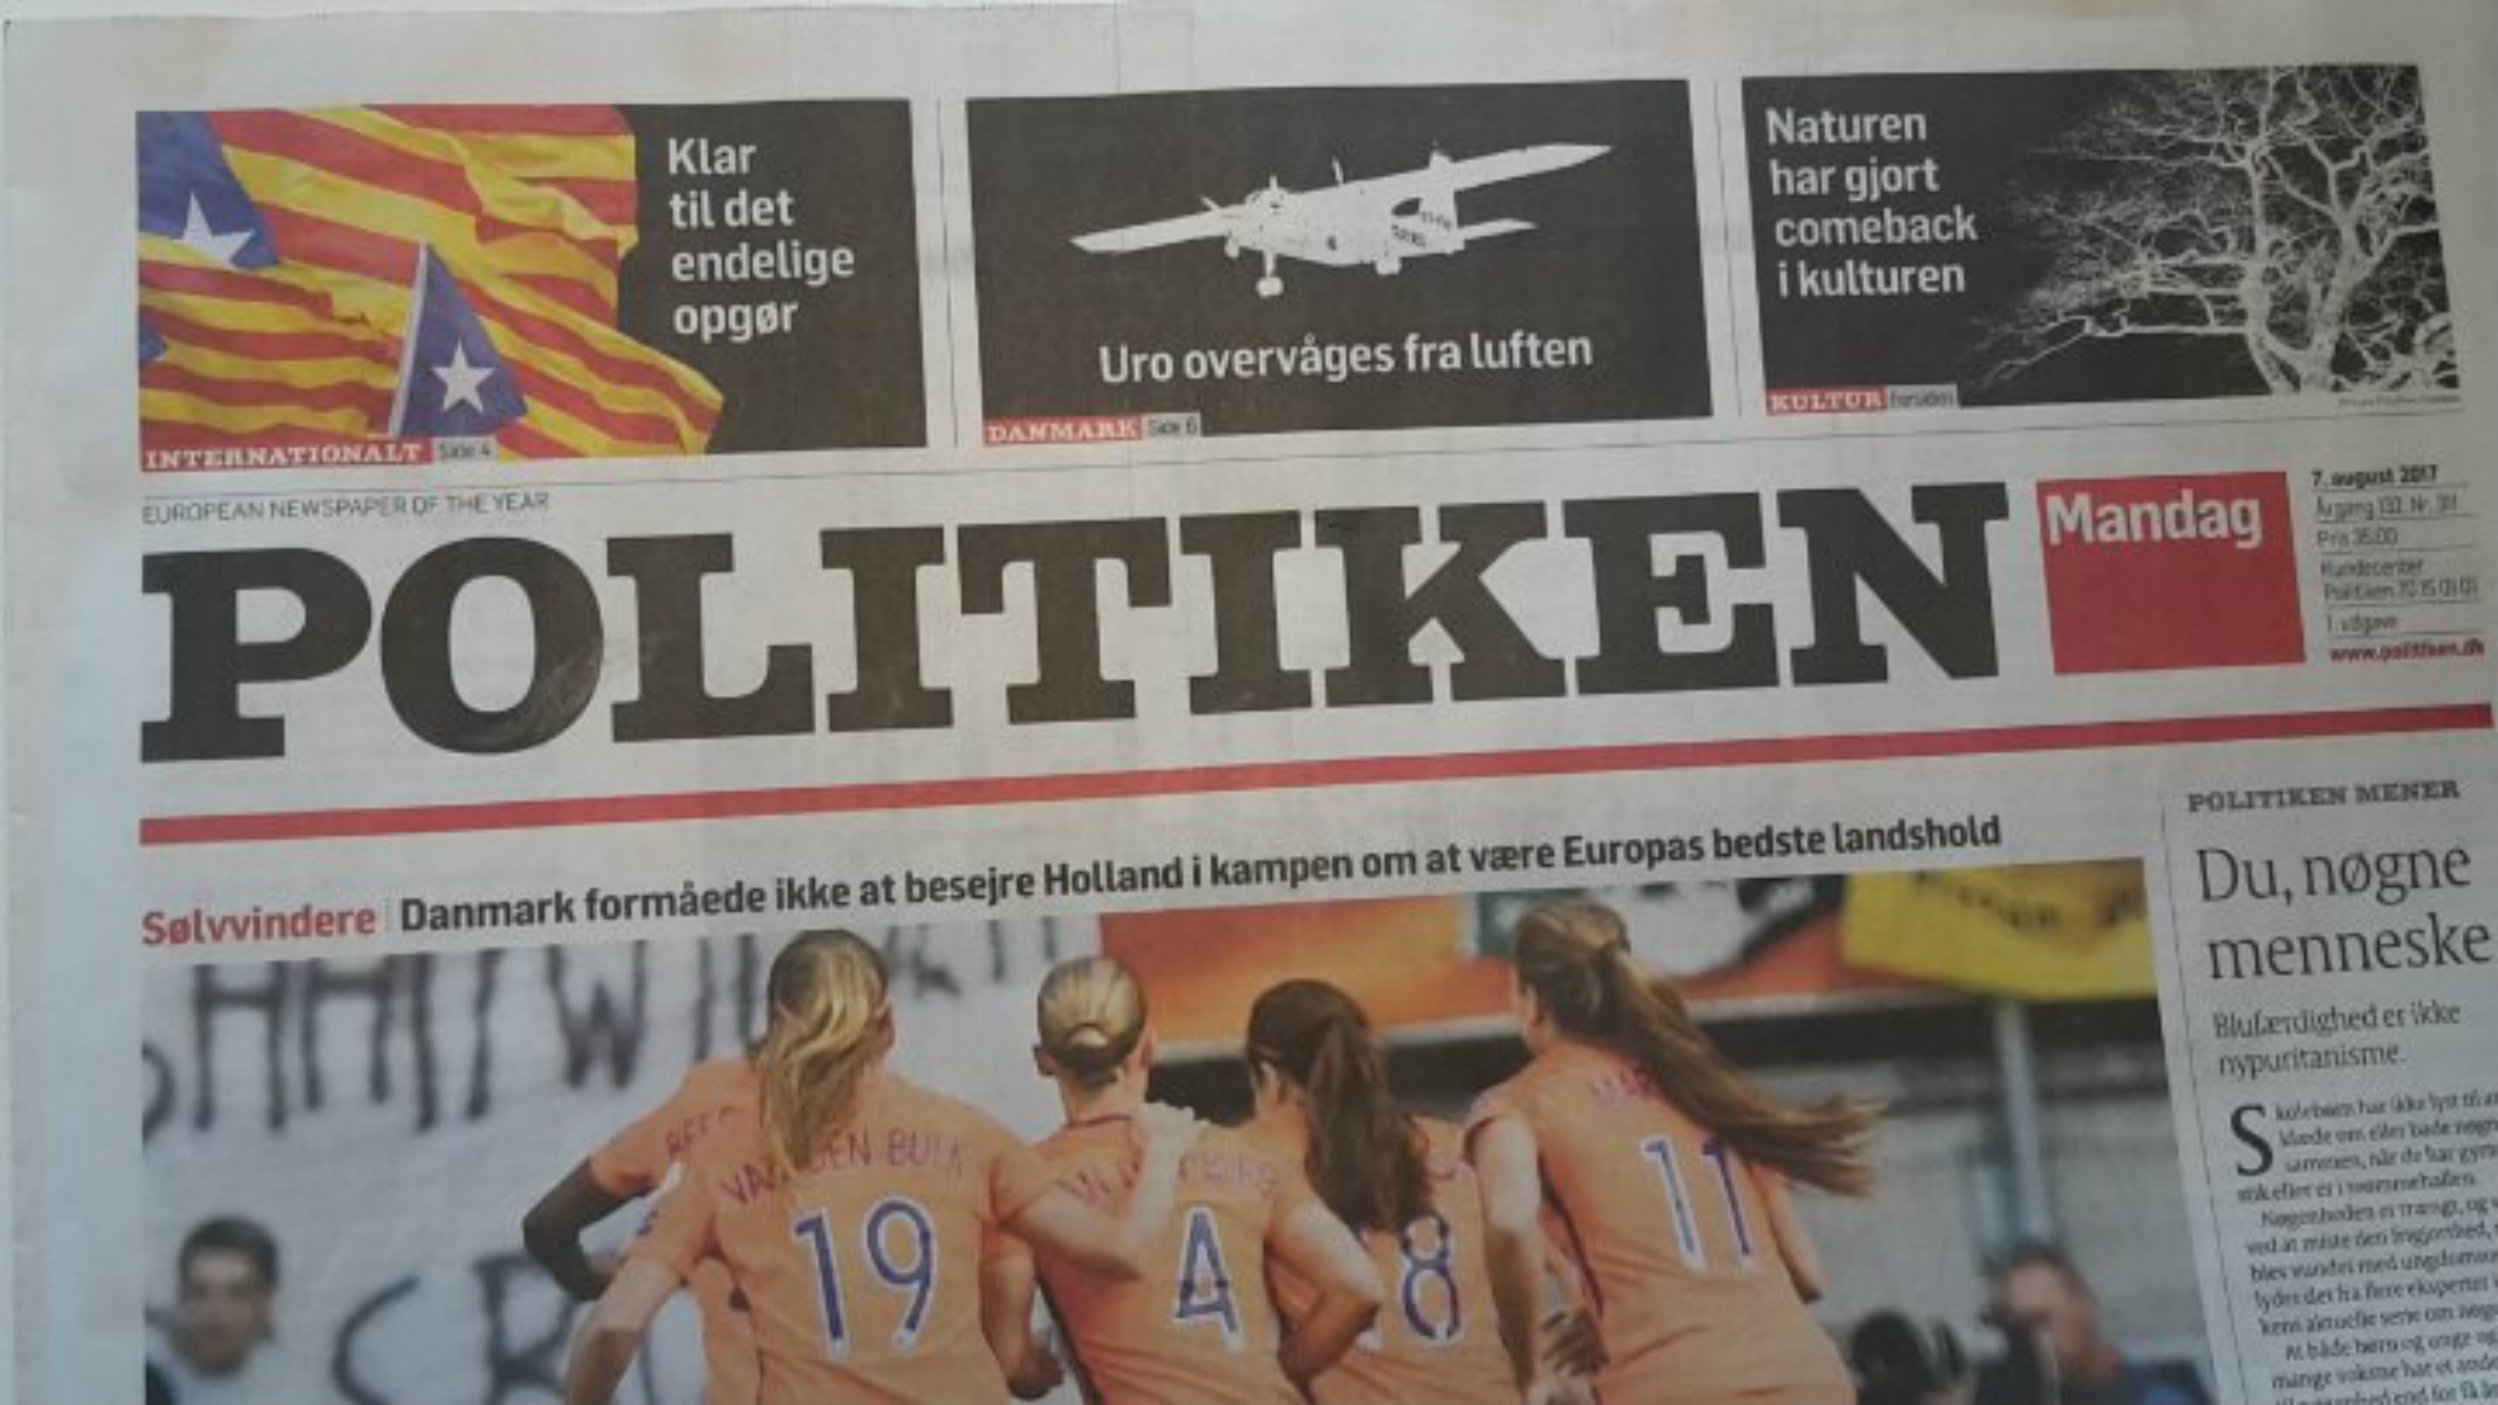 El diario 'Politiken' dice que el referéndum acabaría con "800 años de amargura"